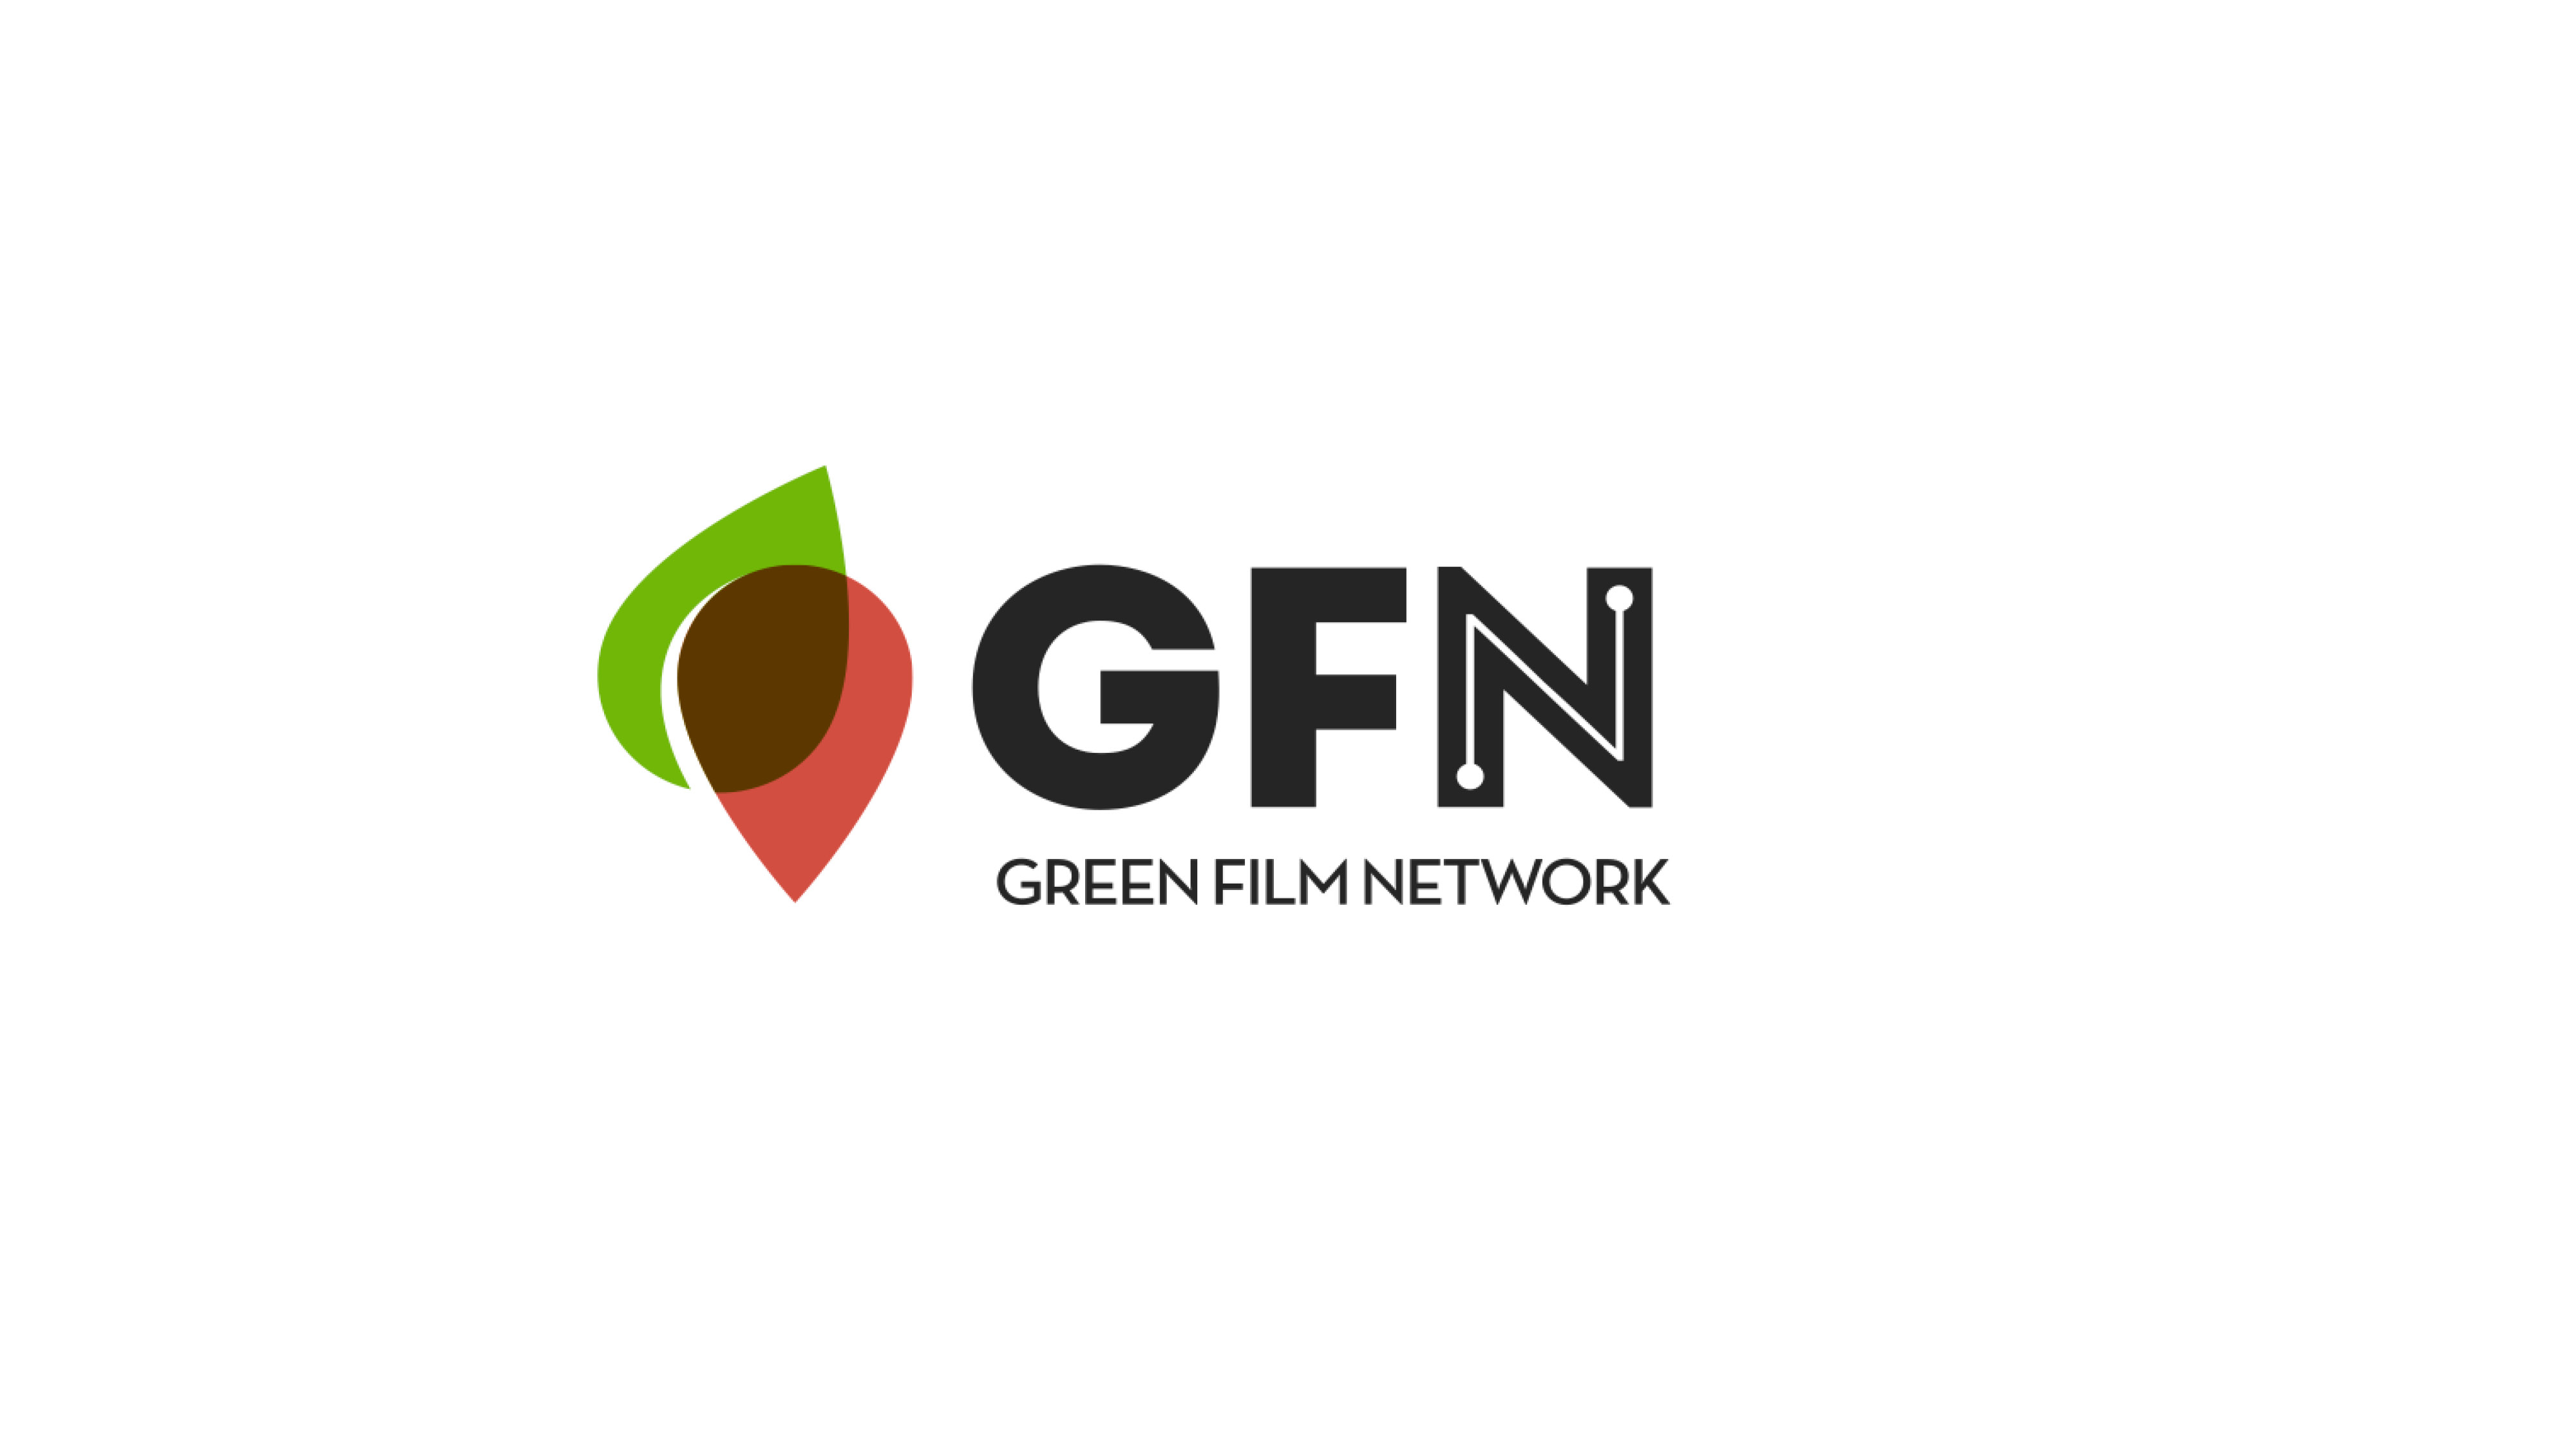 Grafické logo organizace Green film Network. Dva lístky. Jeden Zelený, jeden hnědý se překrývají.